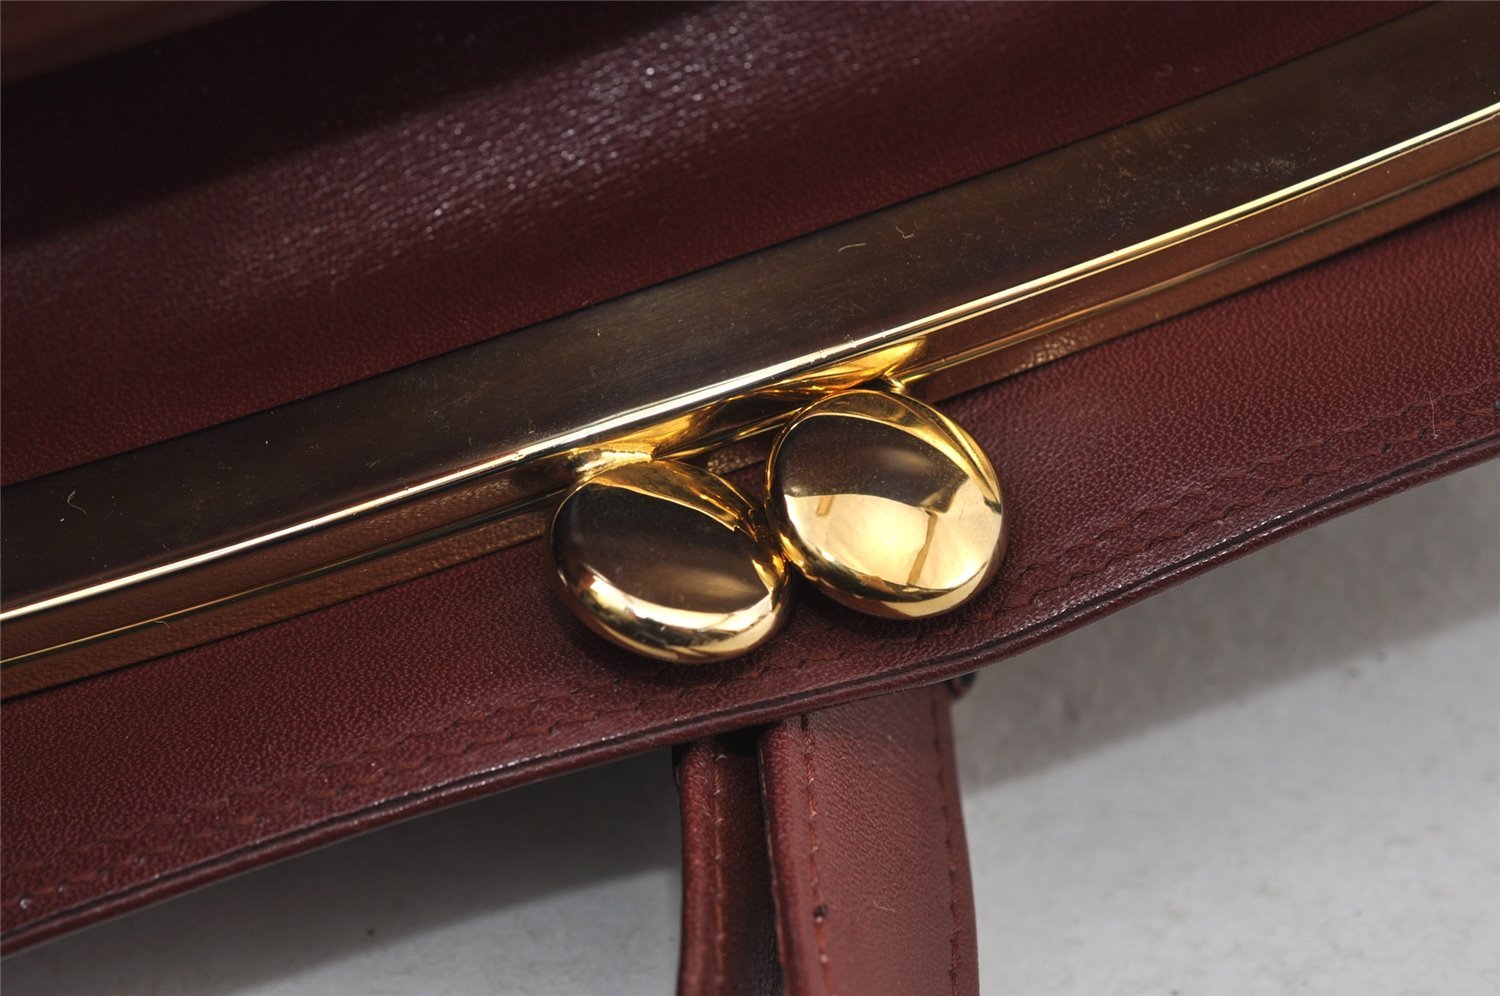 Authentic Cartier Must de Cartier Leather Shoulder Cross Bag Bordeaux Red 7909I